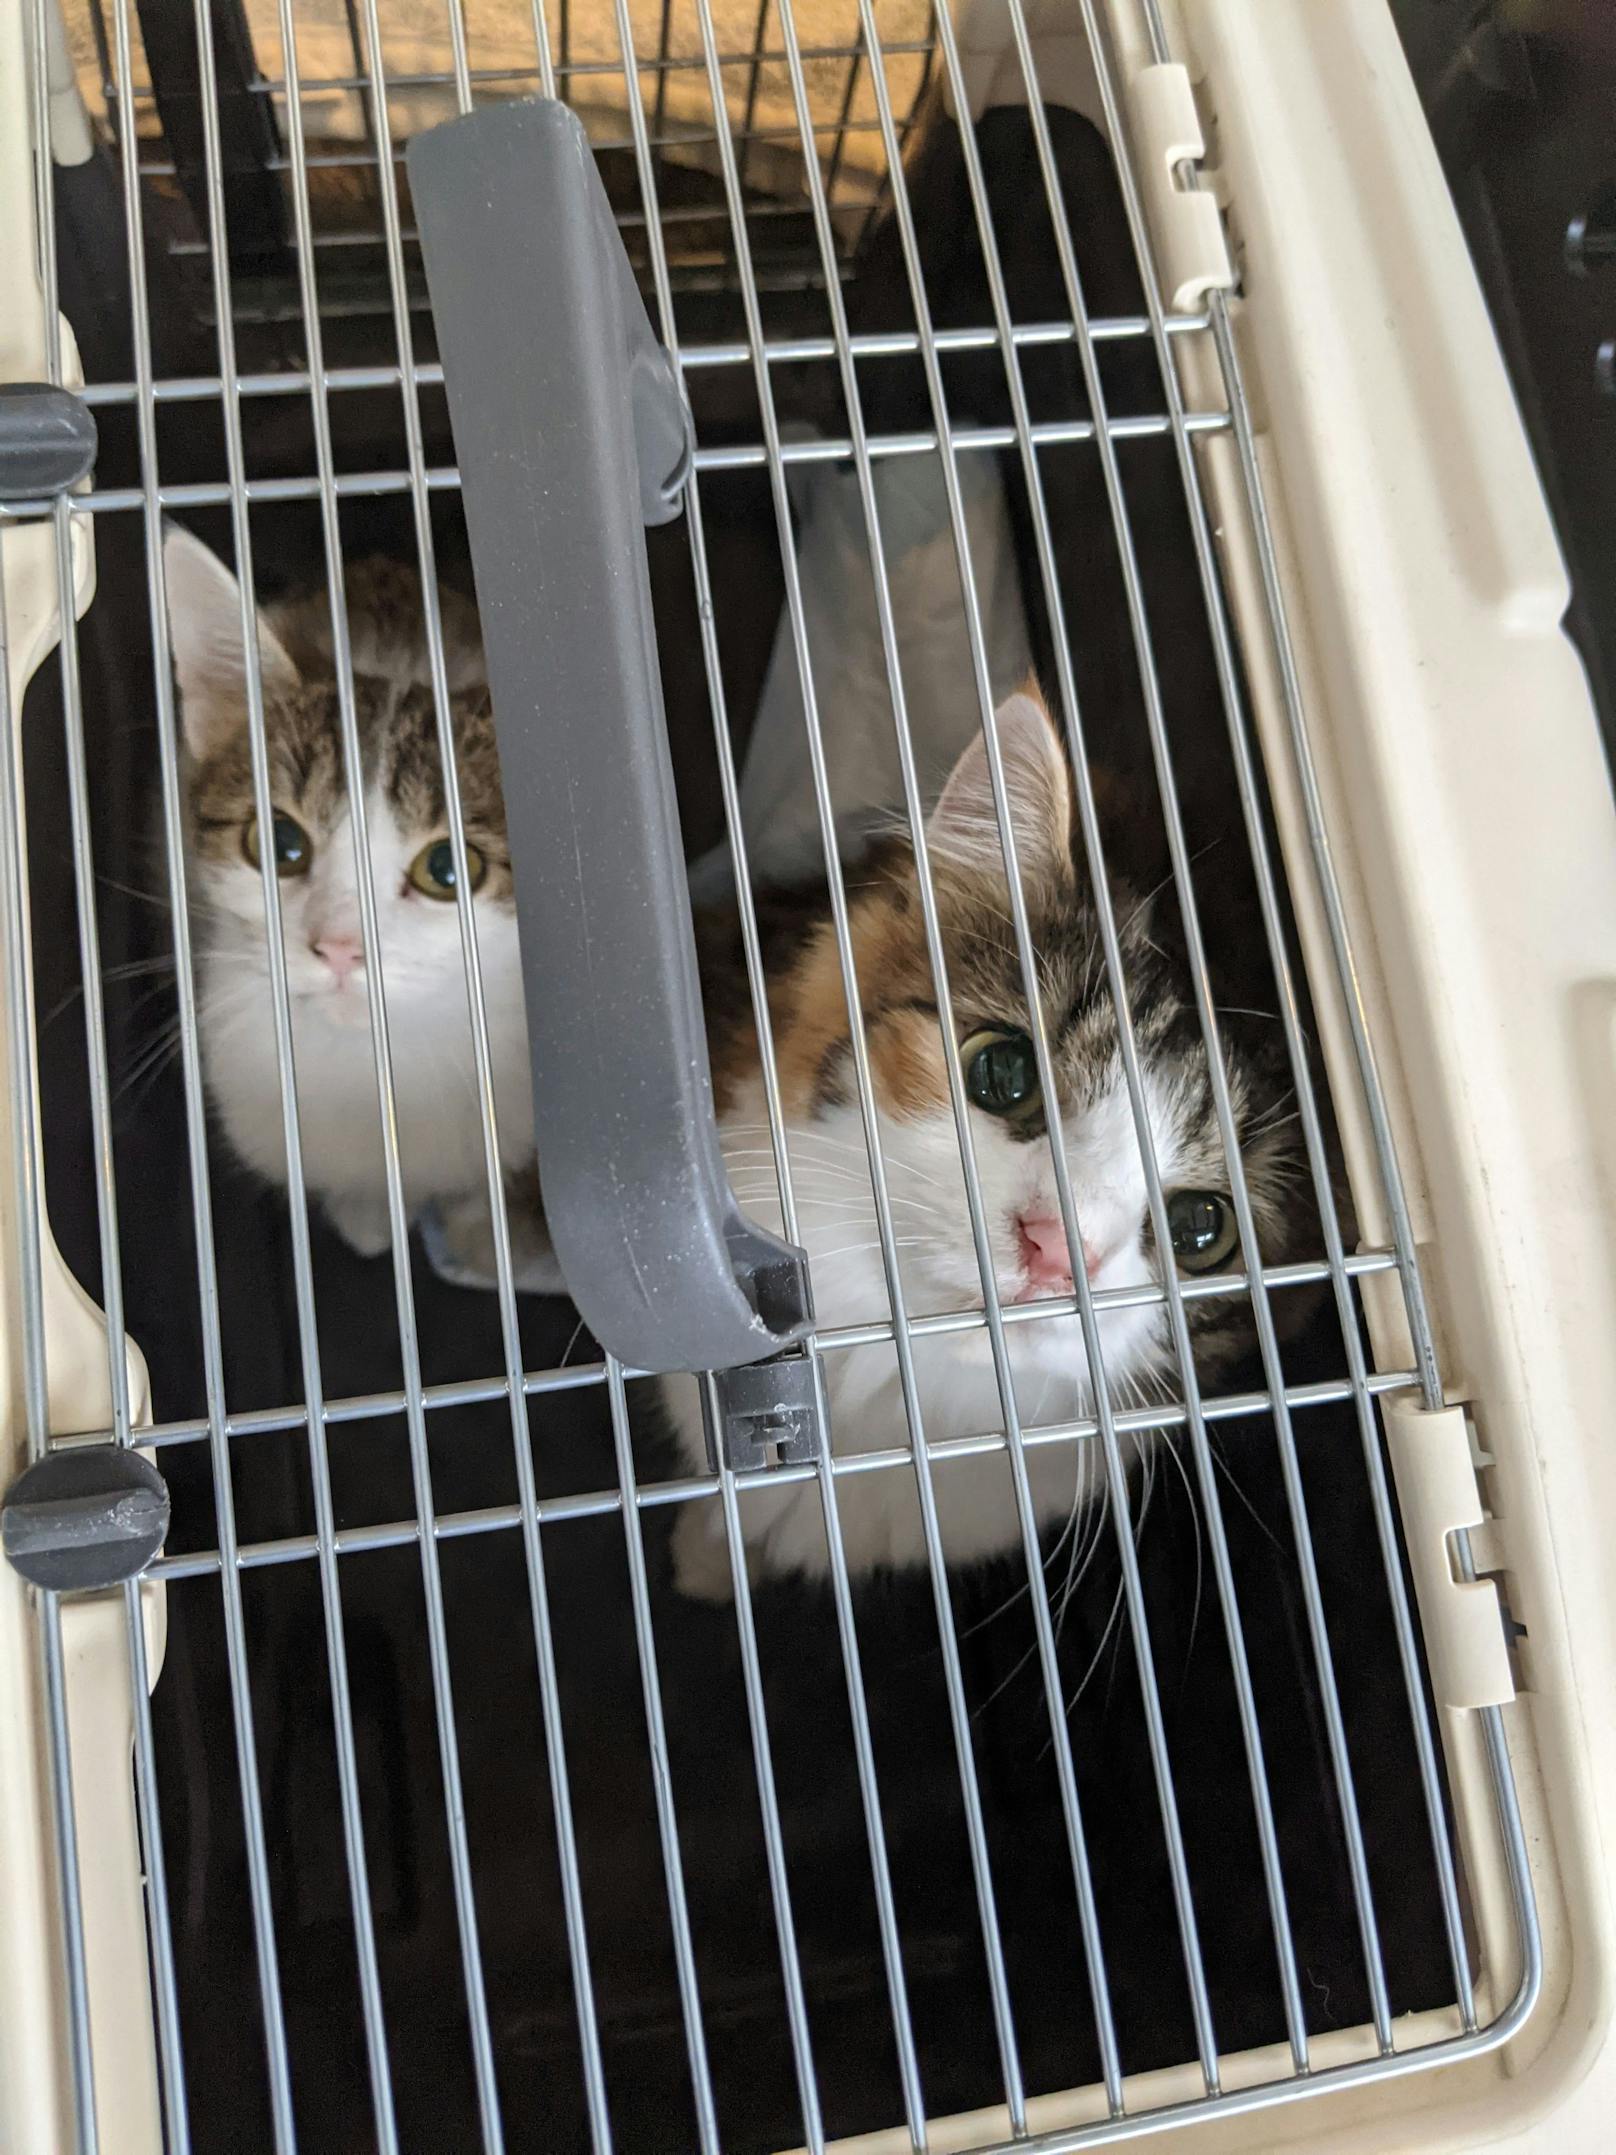 In stundenlanger Arbeit konnte die Tierrettung der Stadt Wien schlussendlich die 38 Katzen aller Altersstufen aus den furchtbaren Haltungsbedingungen in der Wohnung in Wien-Landstraße bergen. Sie werden nun im TierQuarTier gepflegt.